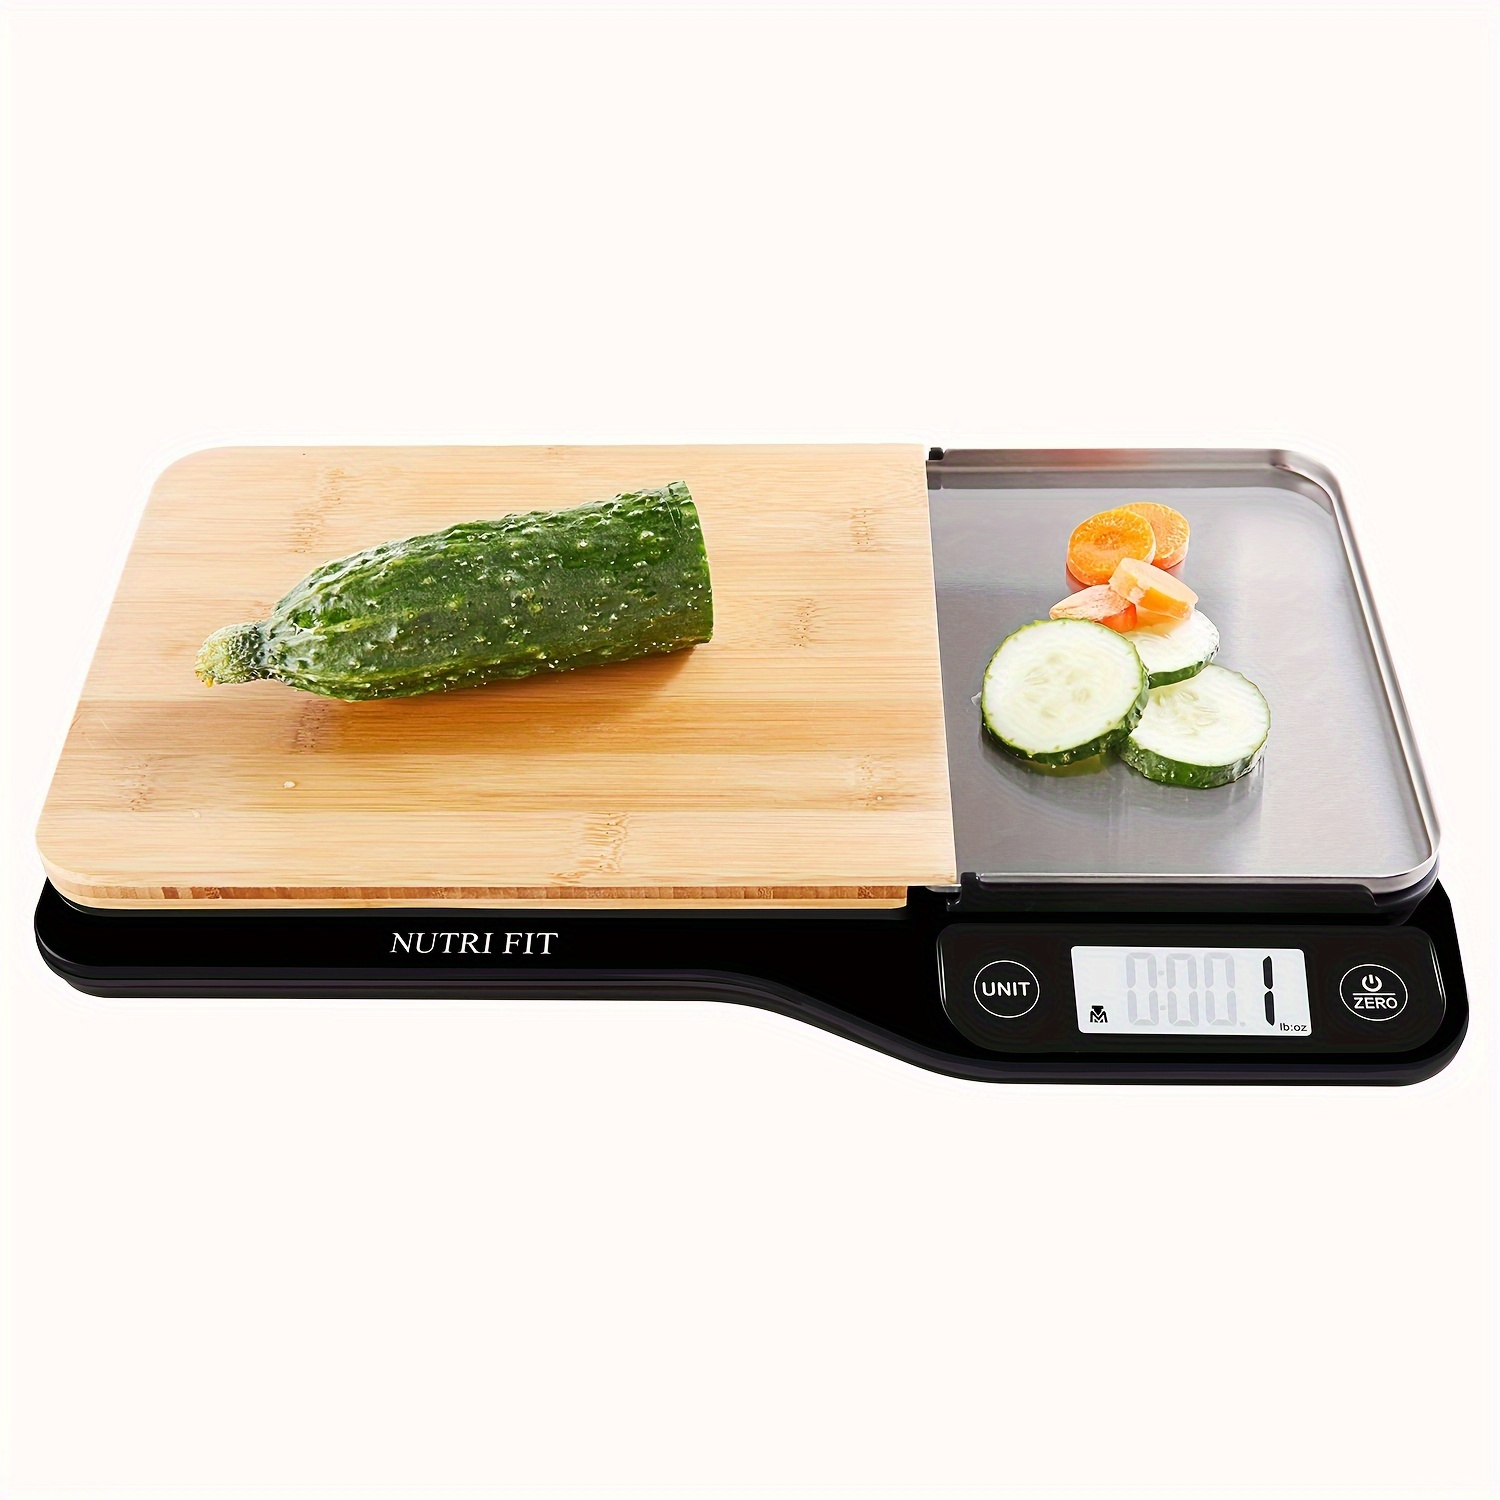 NUTRI FIT Báscula de alimentos – Báscula digital de cocina 3 en 1, pesa  gramos y onzas con tabla de cortar extraíble y bandeja, pantalla LCD, 11